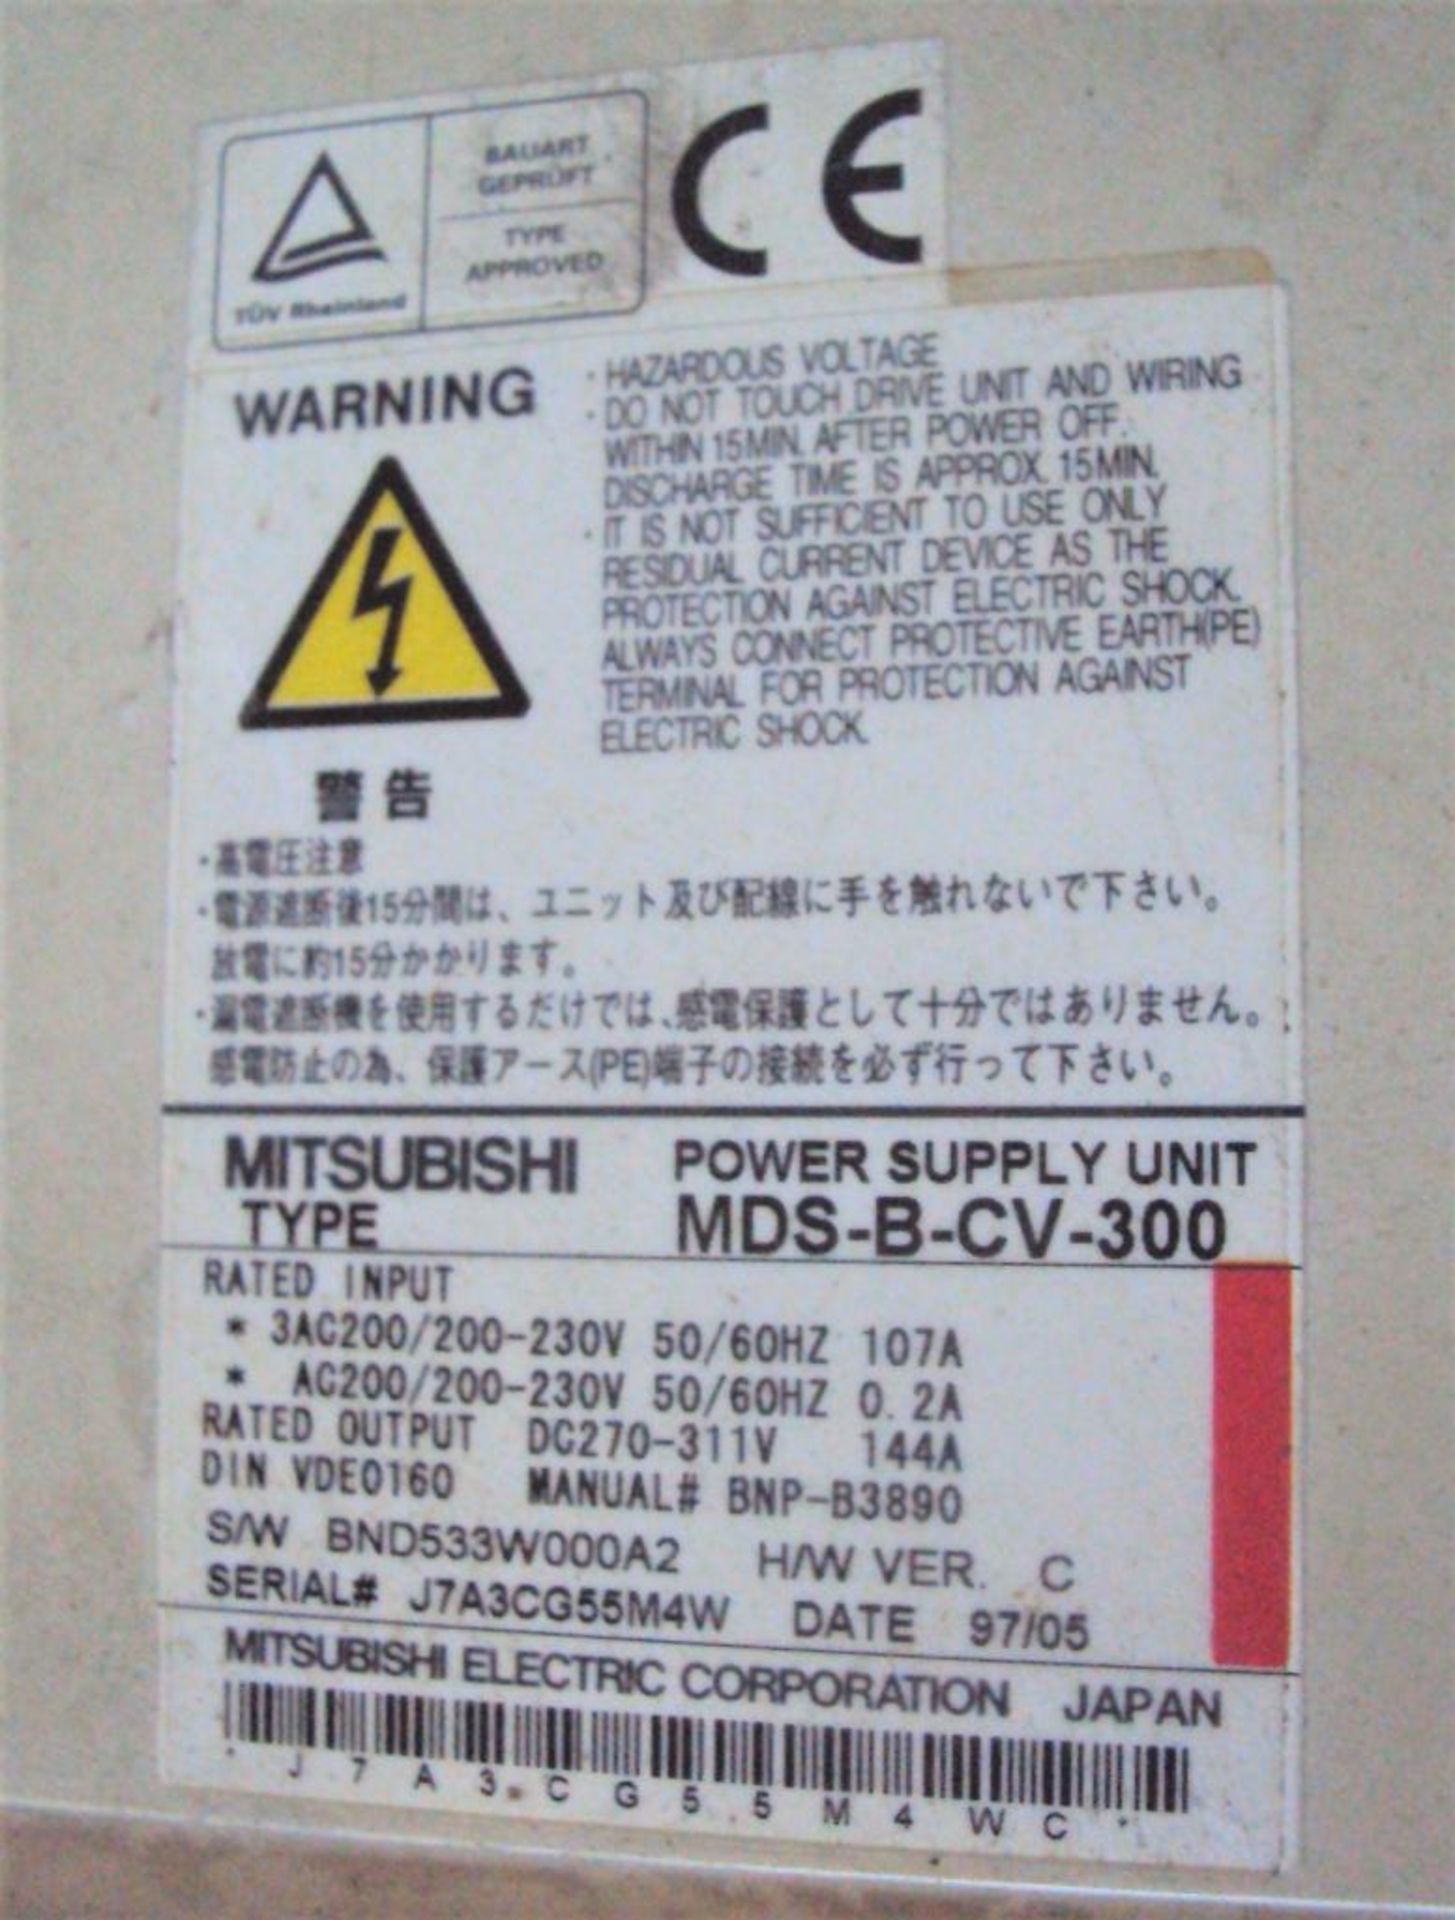 Mitsubishi MDS-B-CV-300 Power Supply - Image 5 of 5